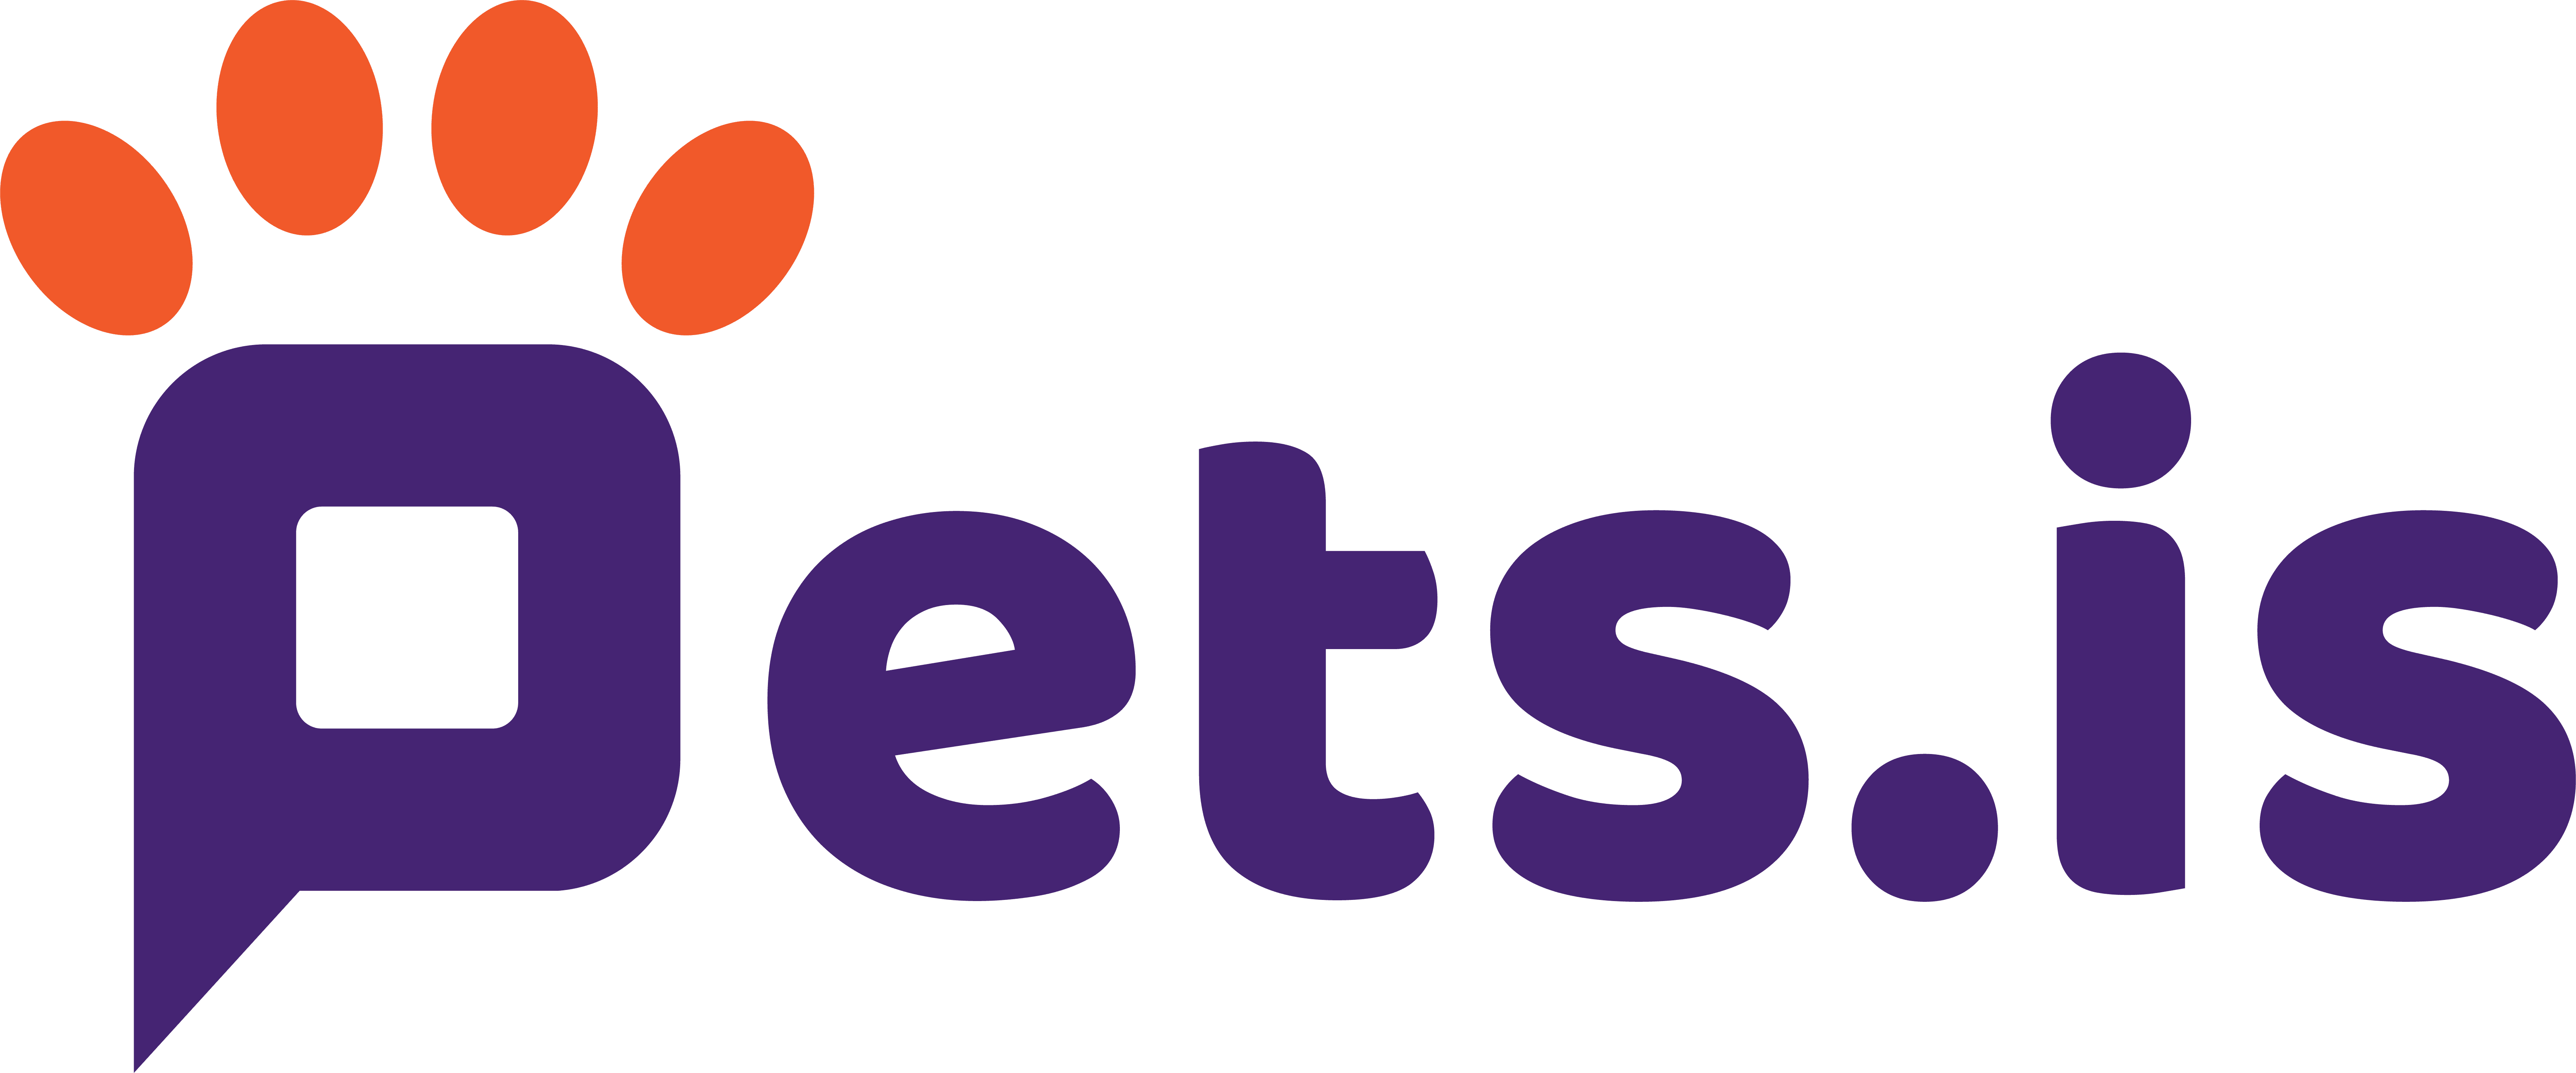 Pets.is logo